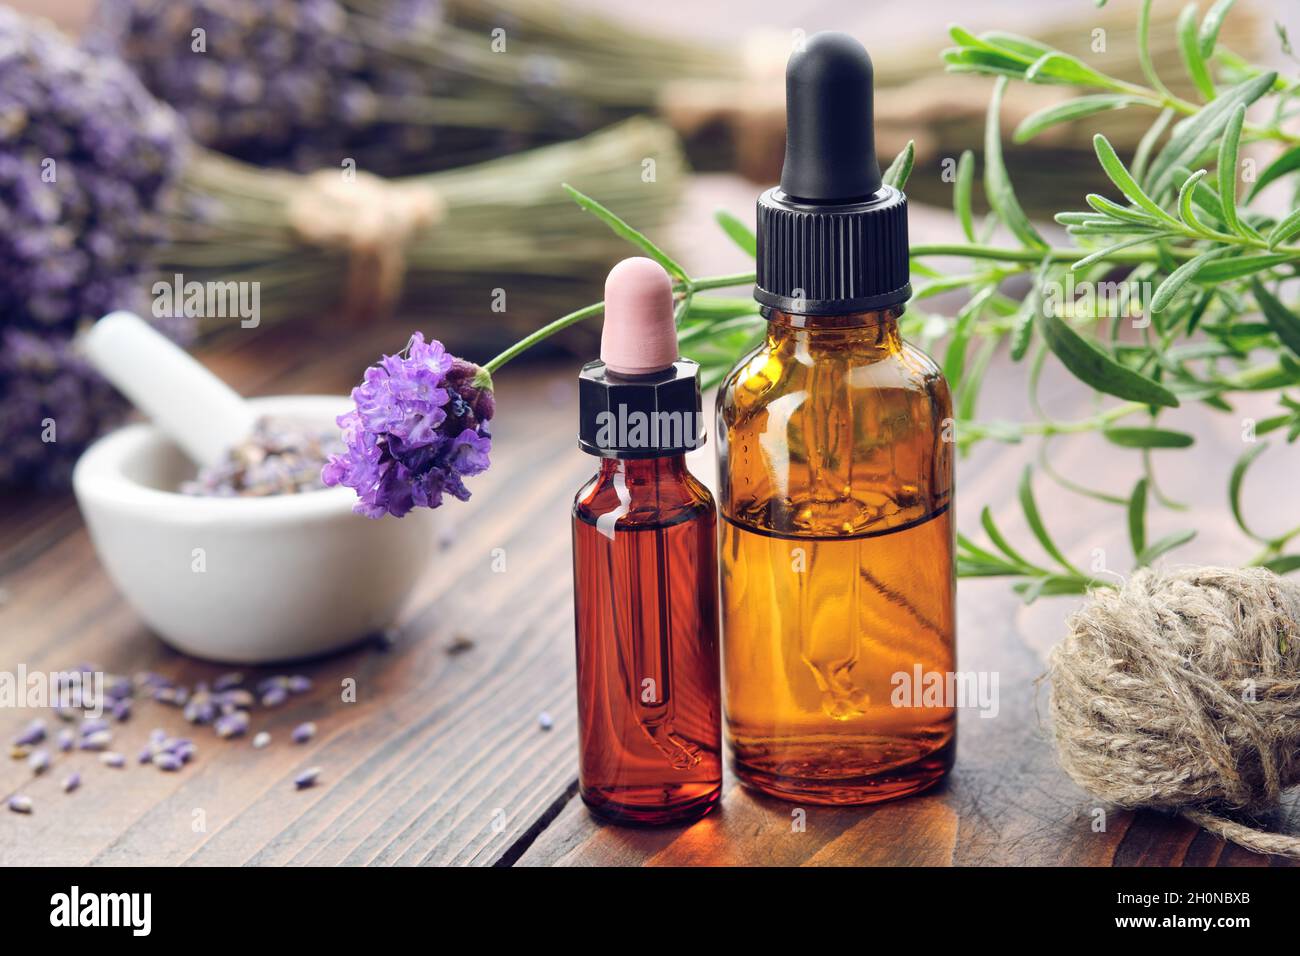 Tropfflaschen mit ätherischem Lavendelöl, frischen und getrockneten Lavendelblüten auf dem Hintergrund. Stockfoto